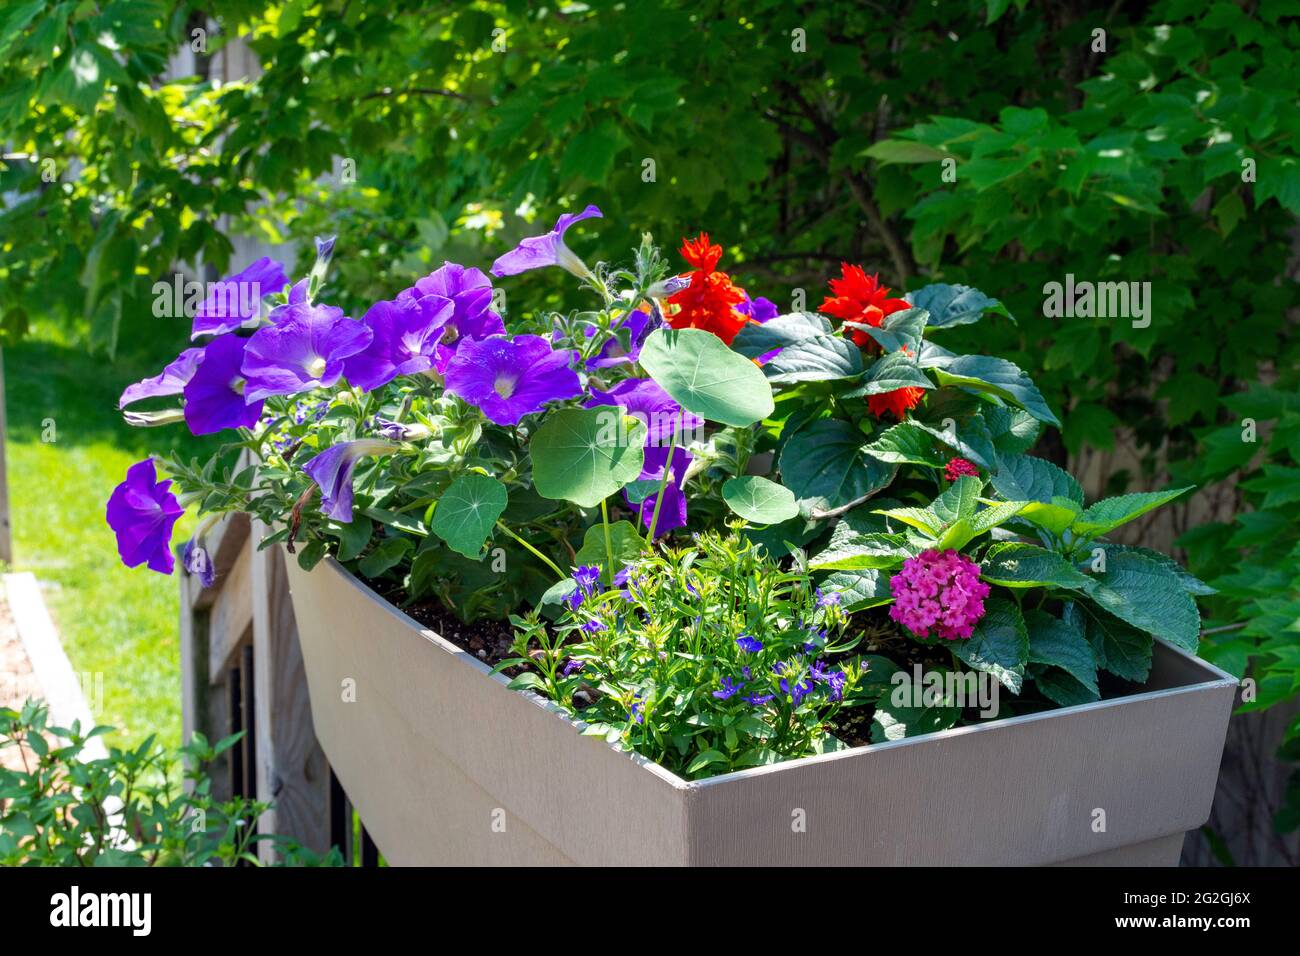 Este jardín contiene coloridas barandas llenas de saliva, nasturtium, lantana y flores de petunia para atraer a los colibríes. Foto de stock